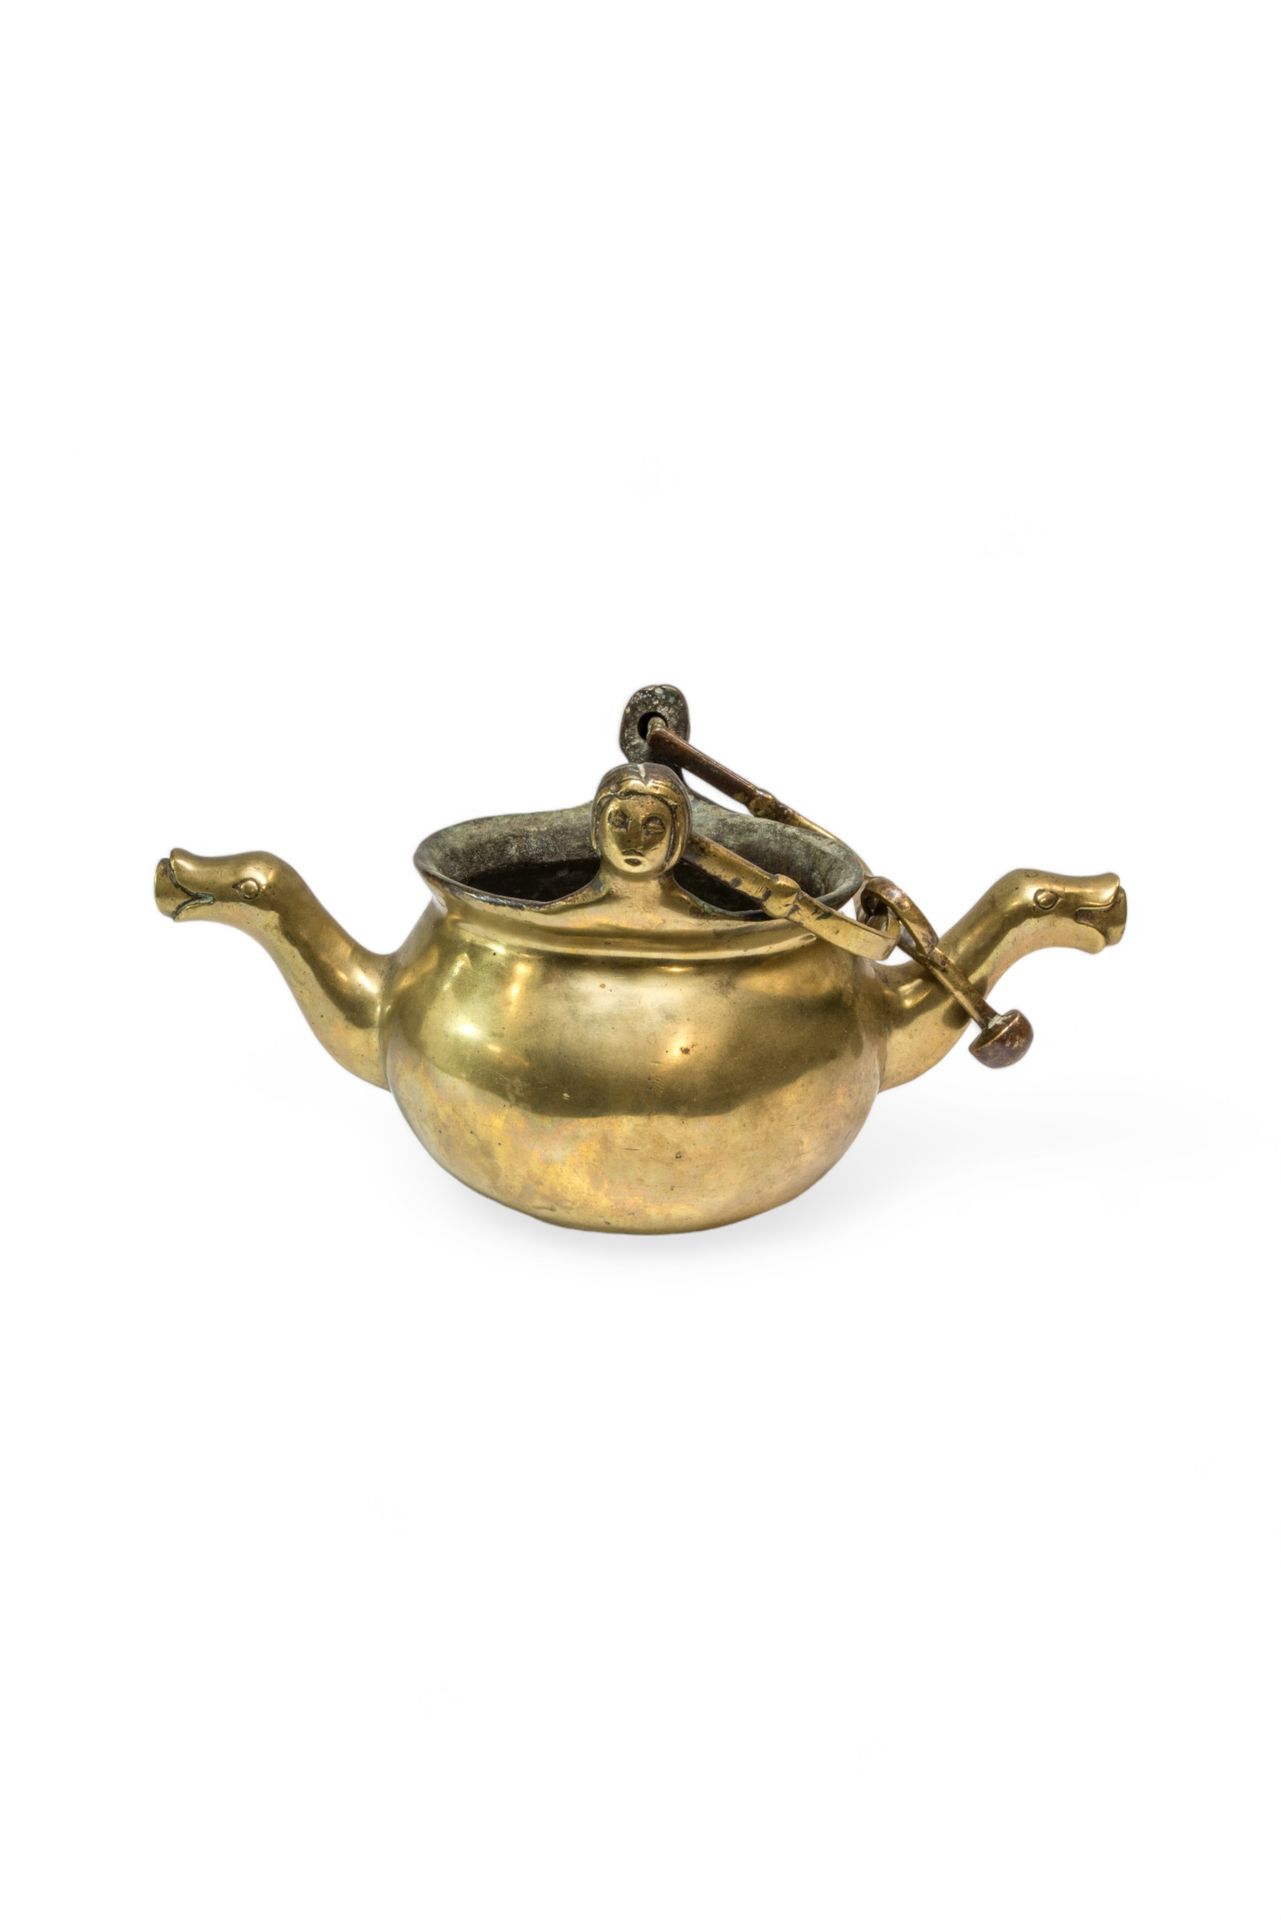 Null 一件铜制 "舀水器 "或盛水器，可能是 17 世纪的作品，两个壶嘴的末端有变形图案，摆动的手柄上有女性头像的耳环。 16 x 31 厘米